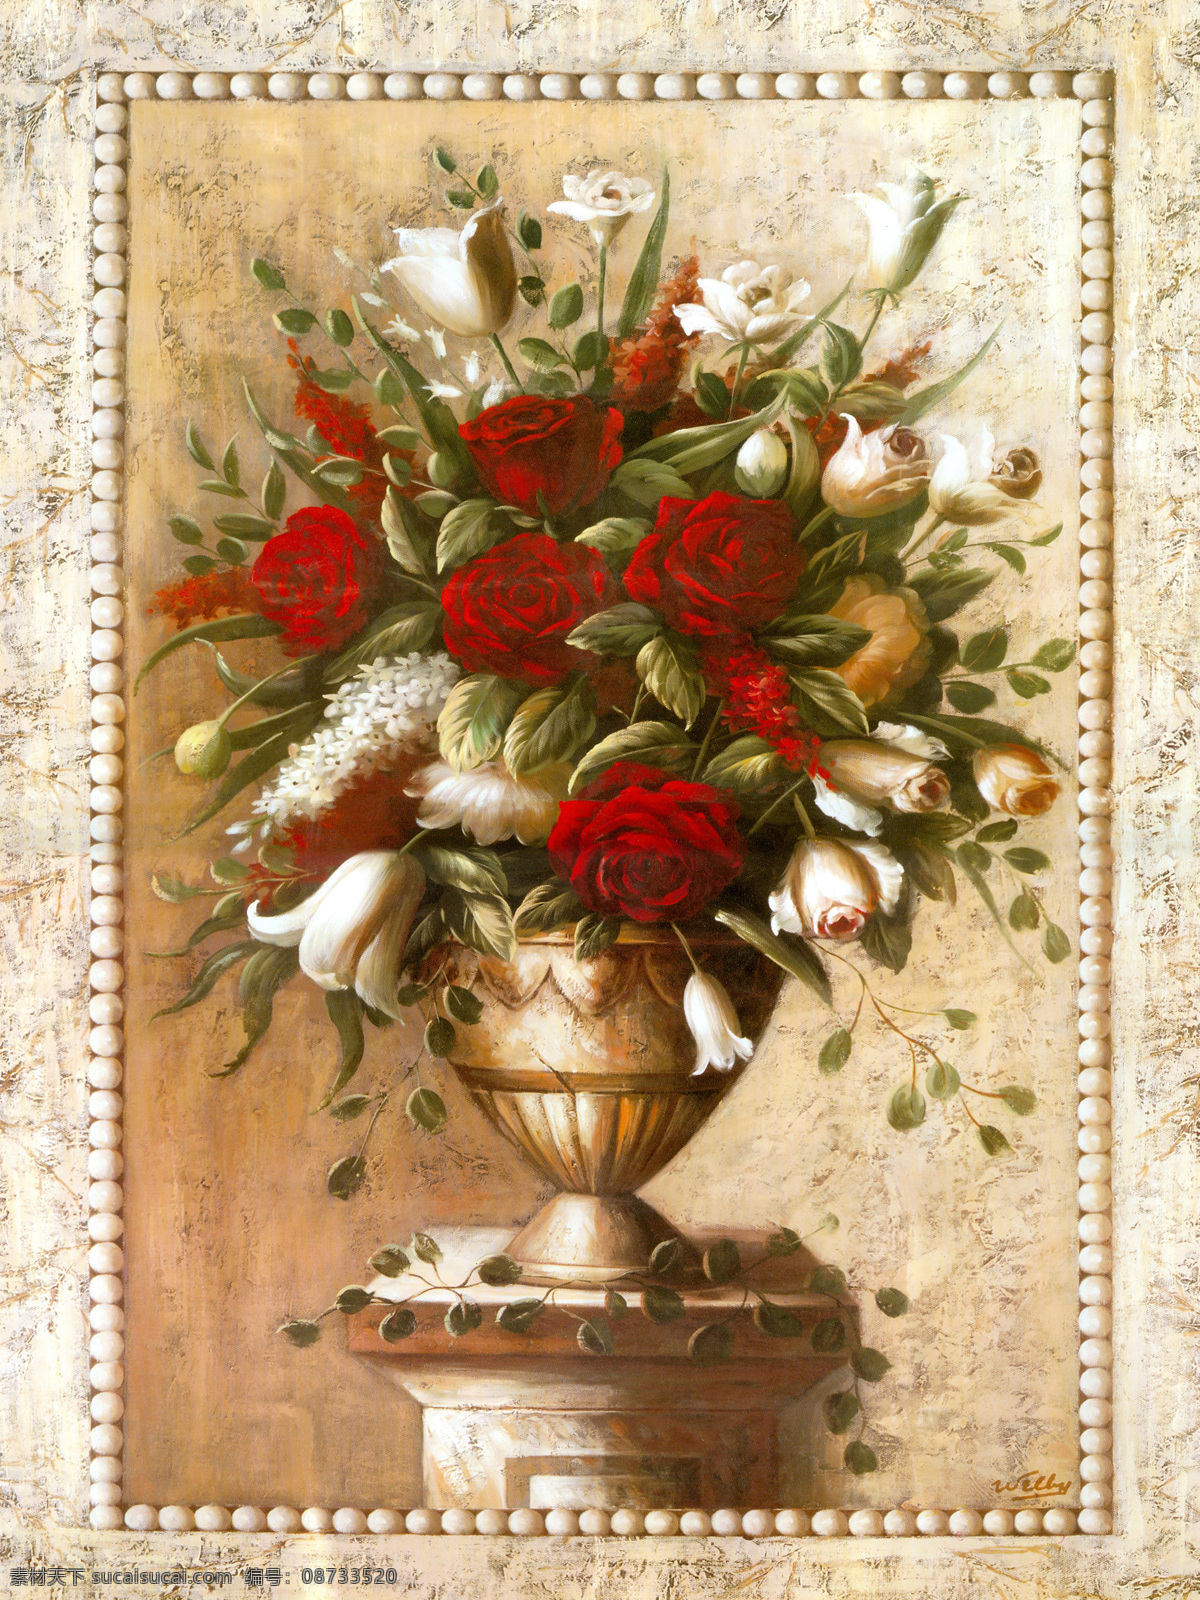 美丽 花朵 装饰画 红玫瑰 油画 中国画 绘画 书画文字 文化艺术